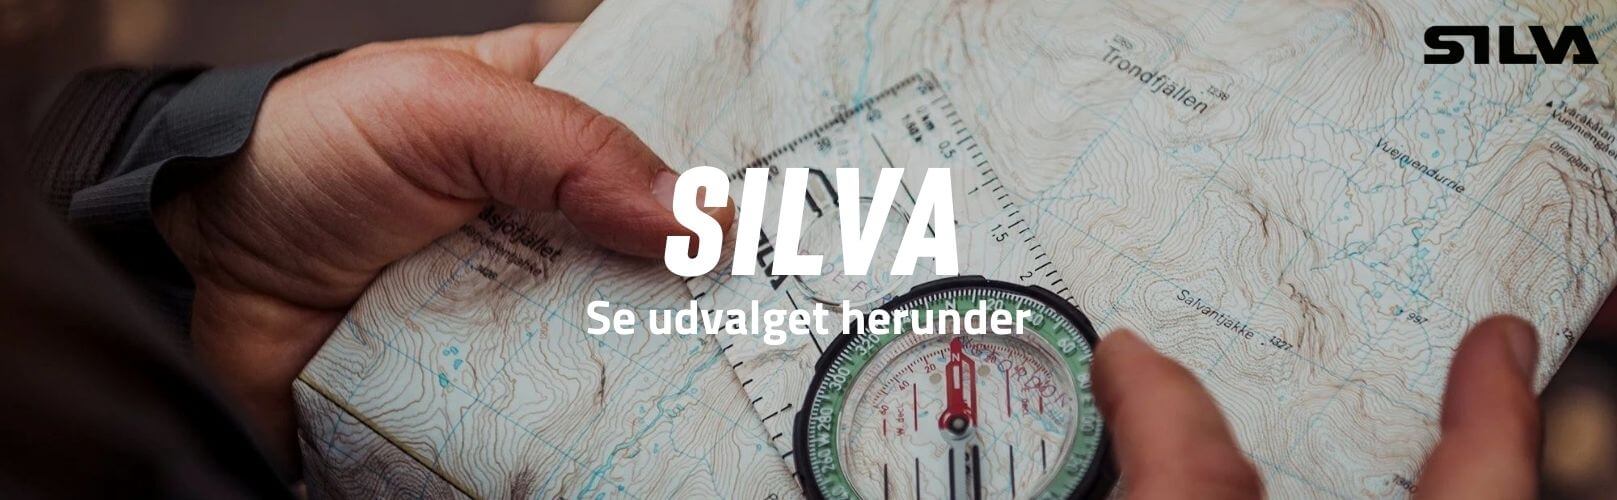 Silva brand banner